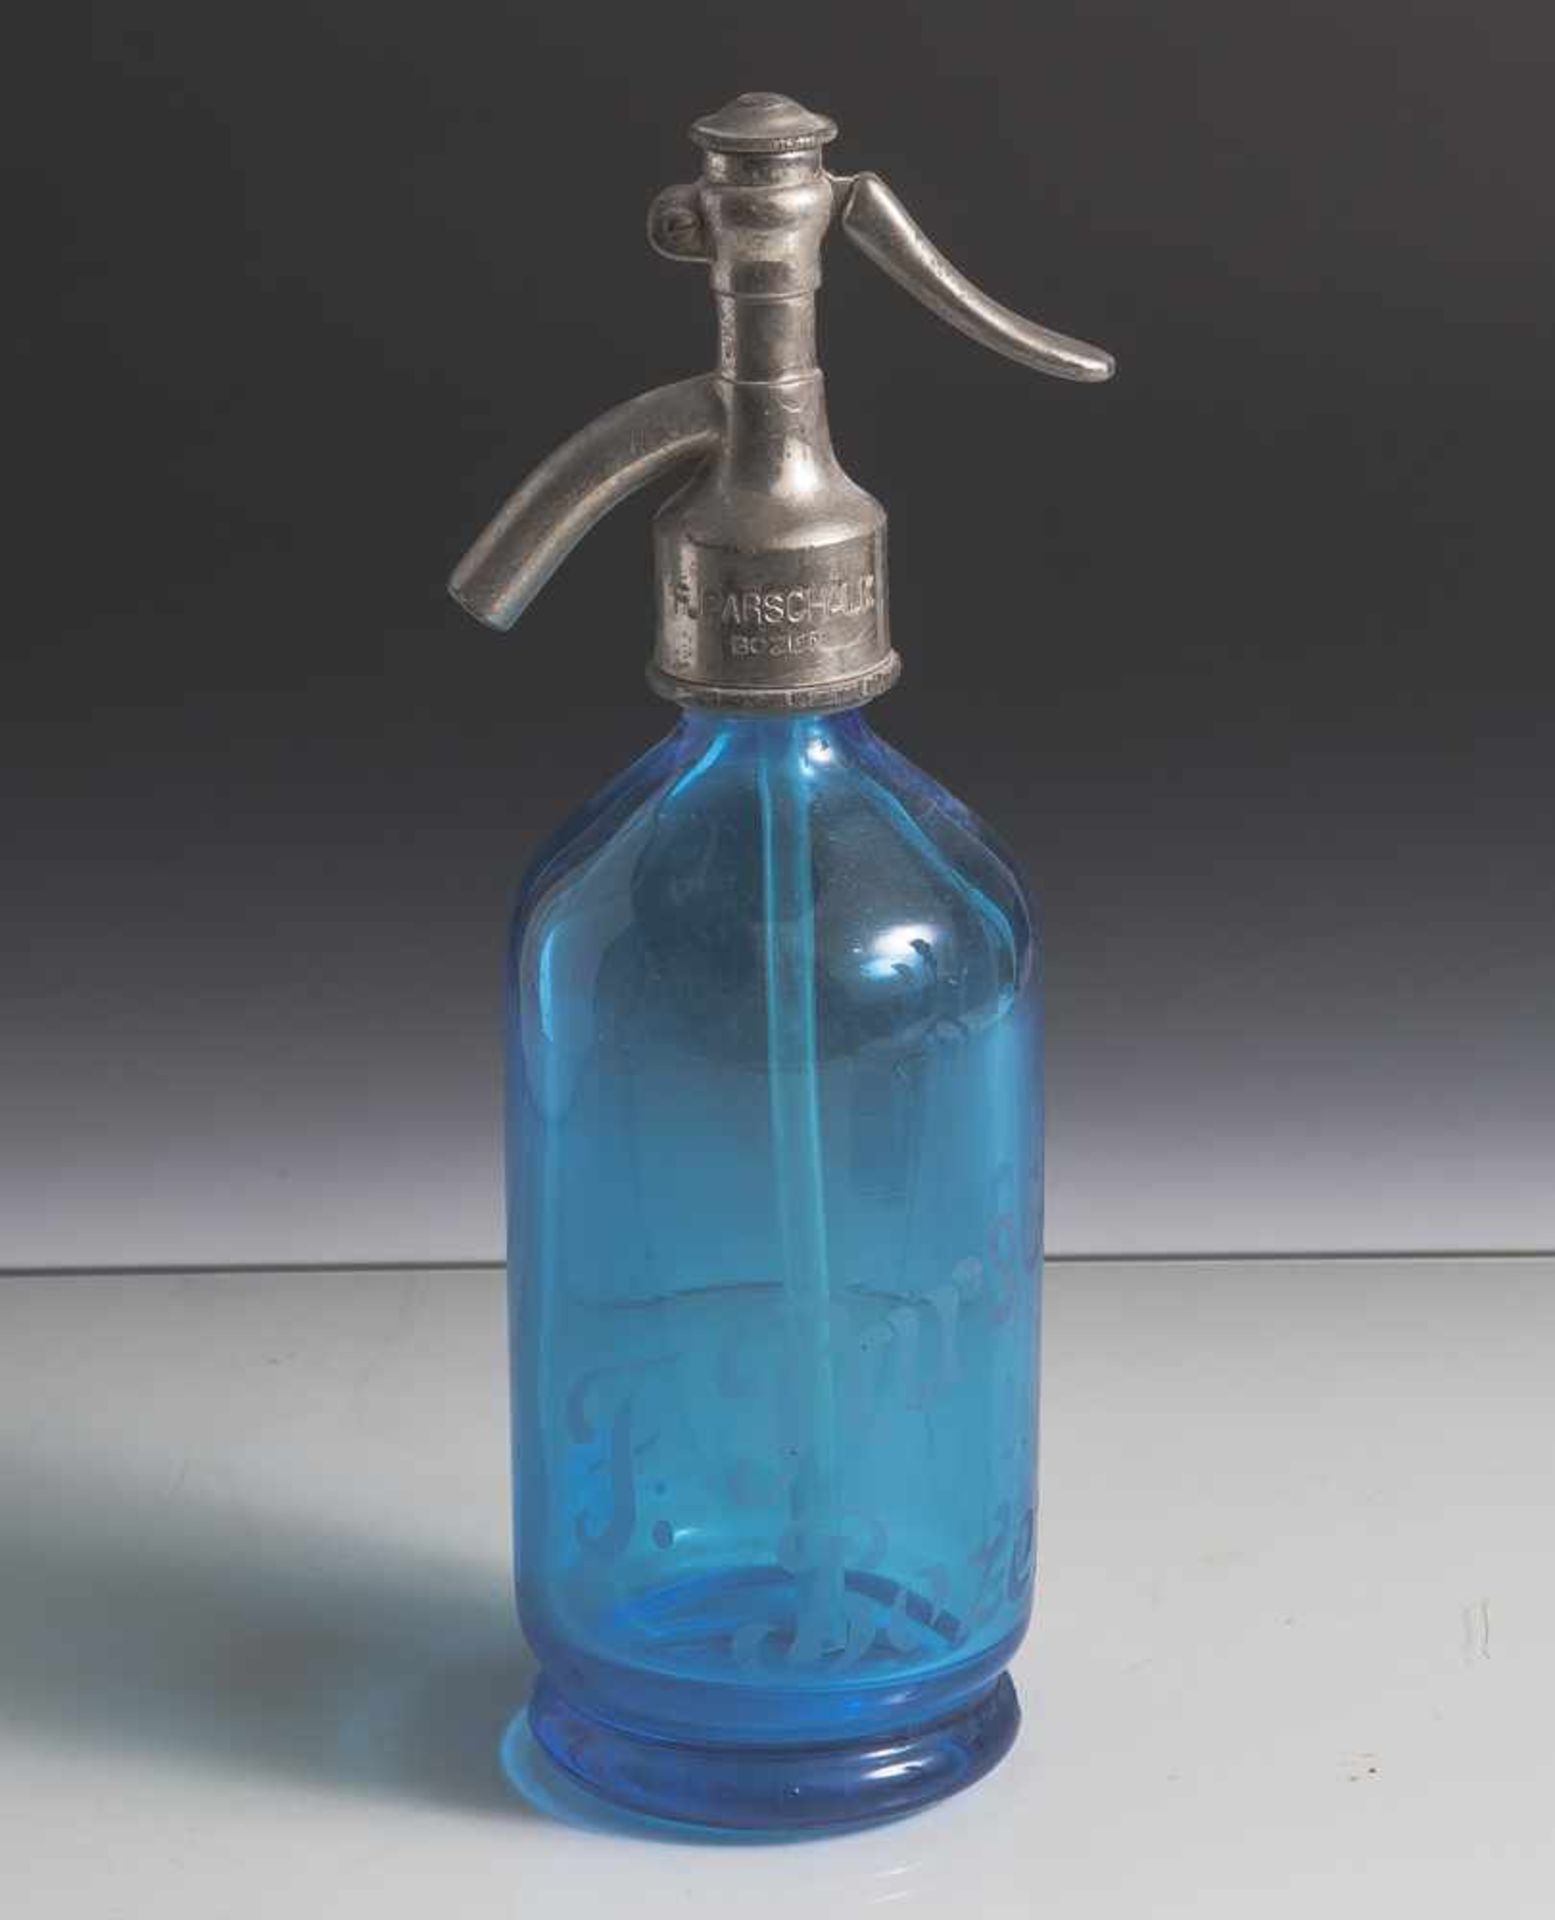 Siphonflasche, Spender für Sodawasser blaues Glas, schauseitig bez. "F. Parschalk Bozen", auf